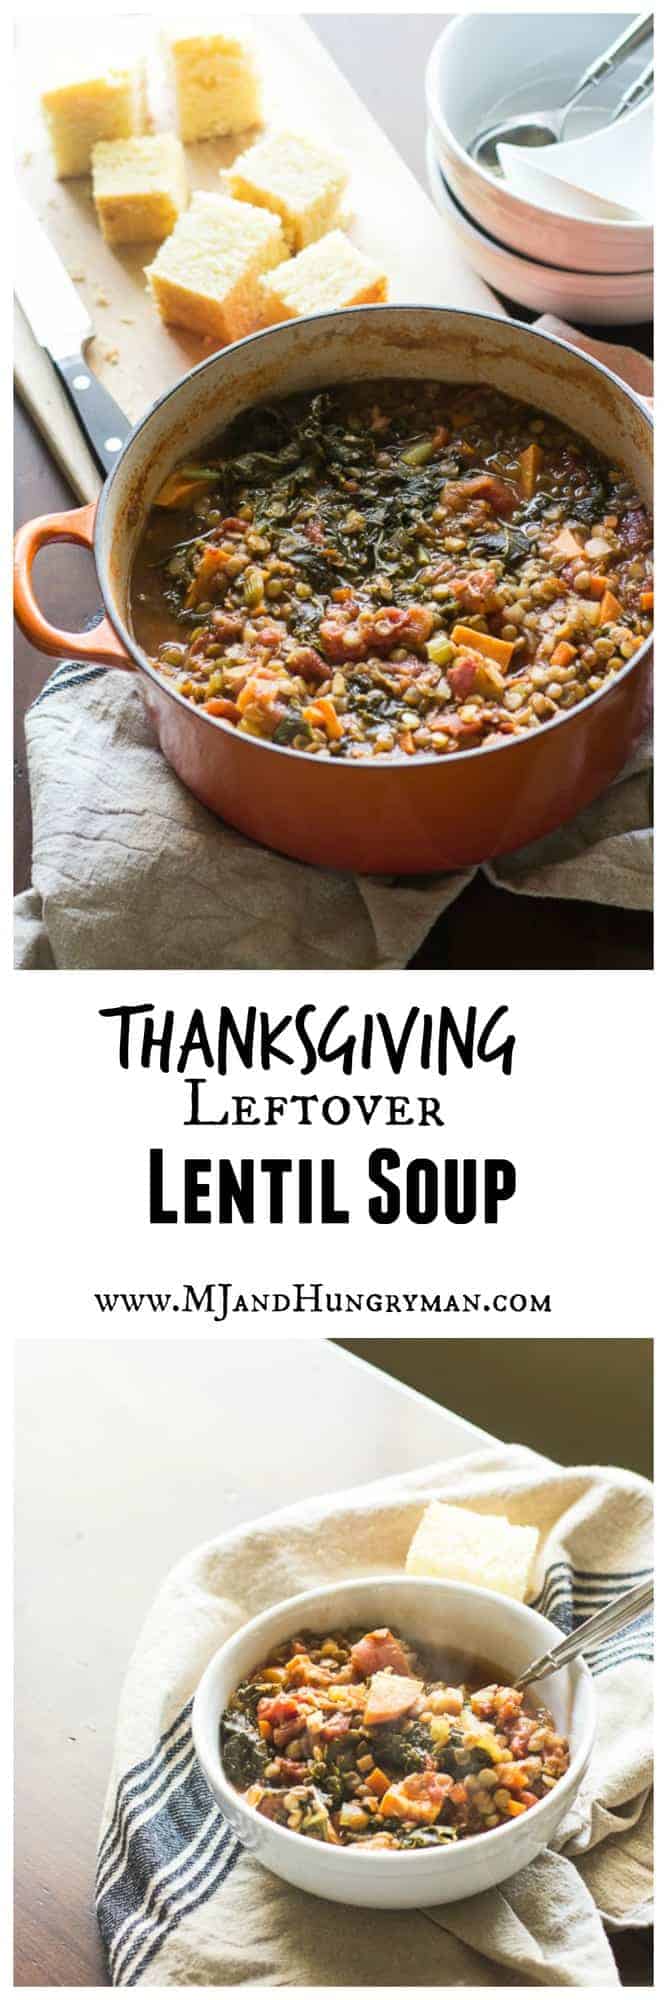 Thanksgiving Leftover Lentil Soup